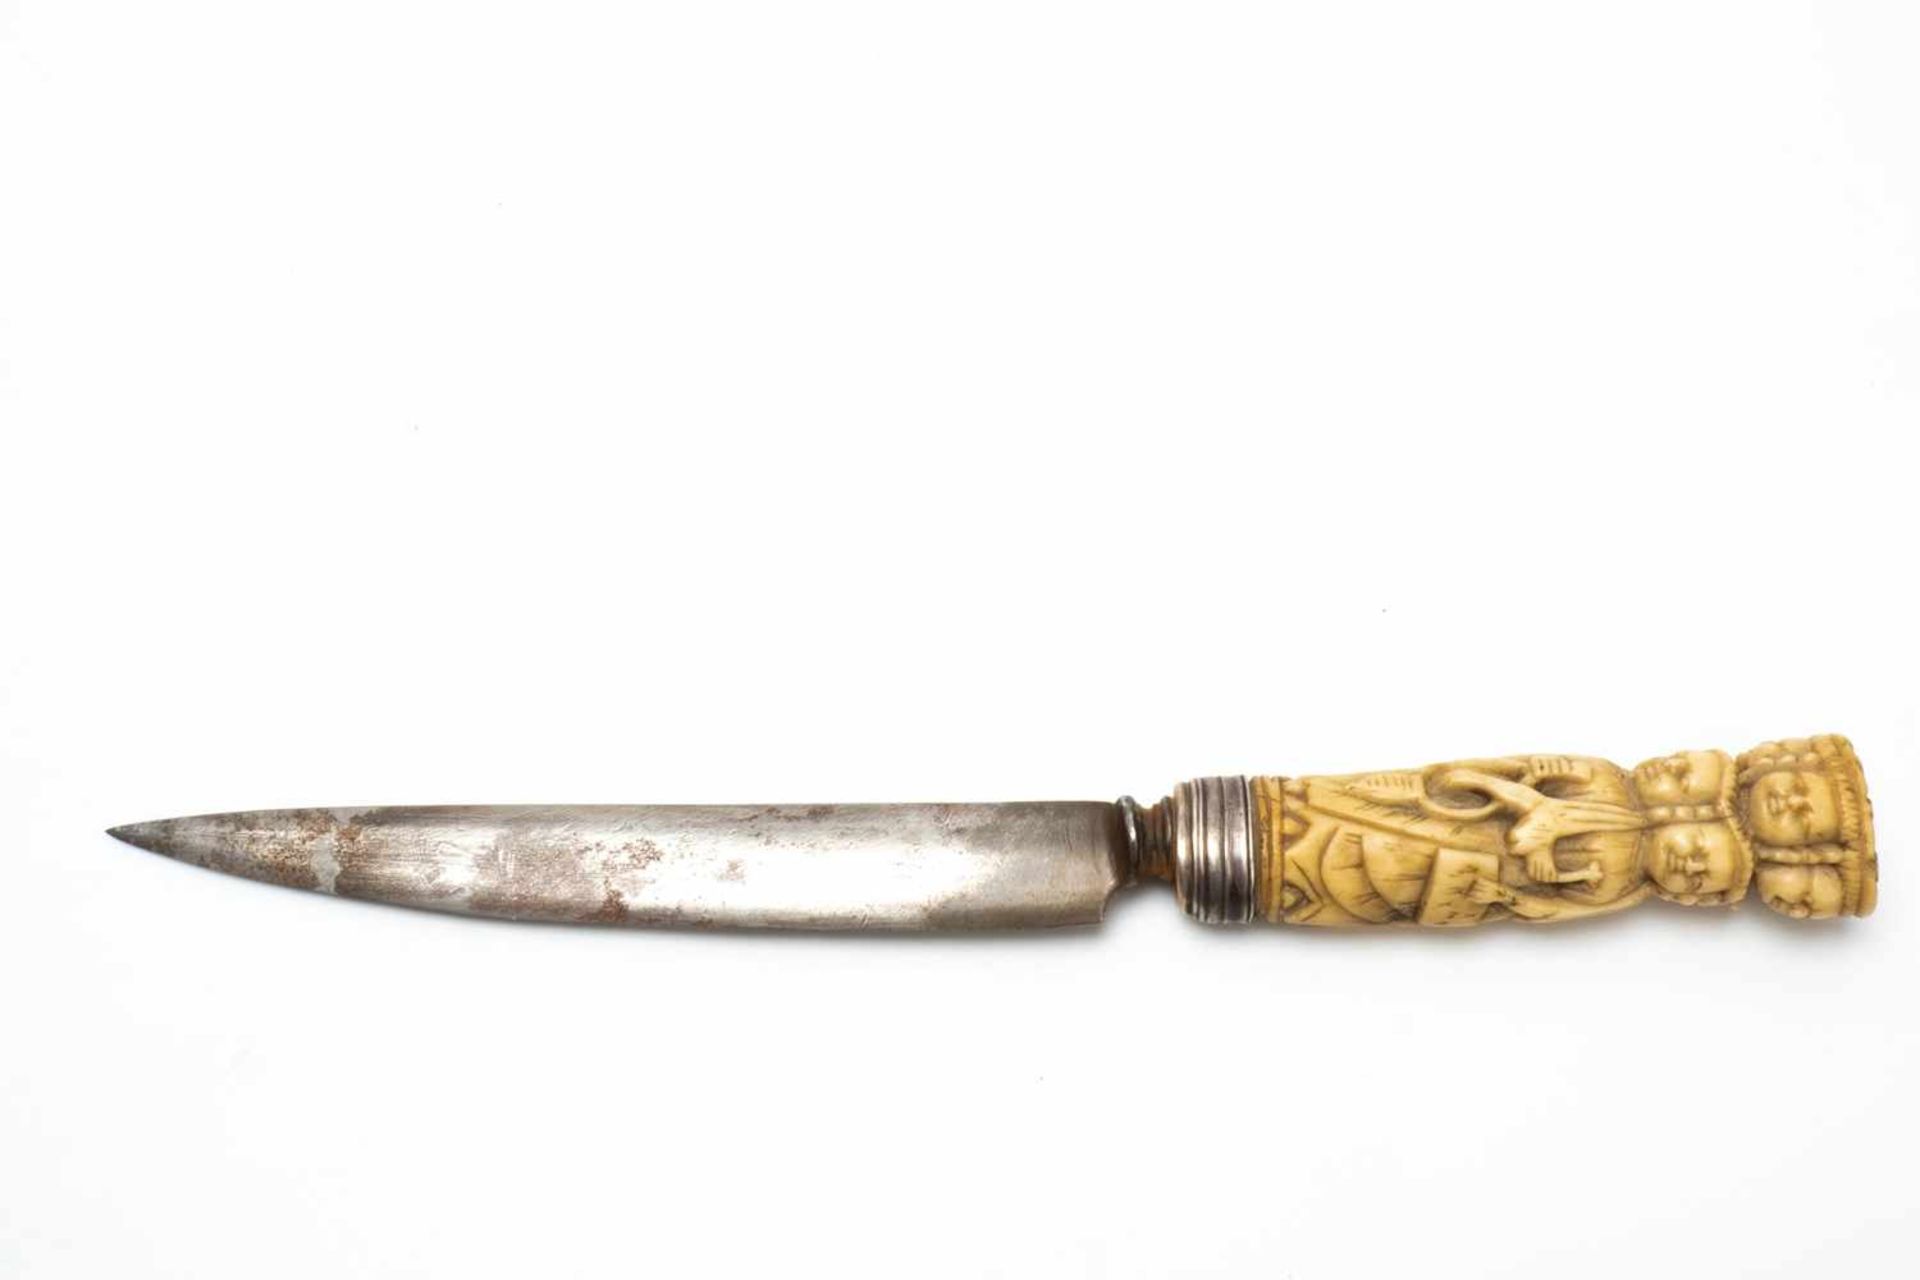 Asian ornate dagger